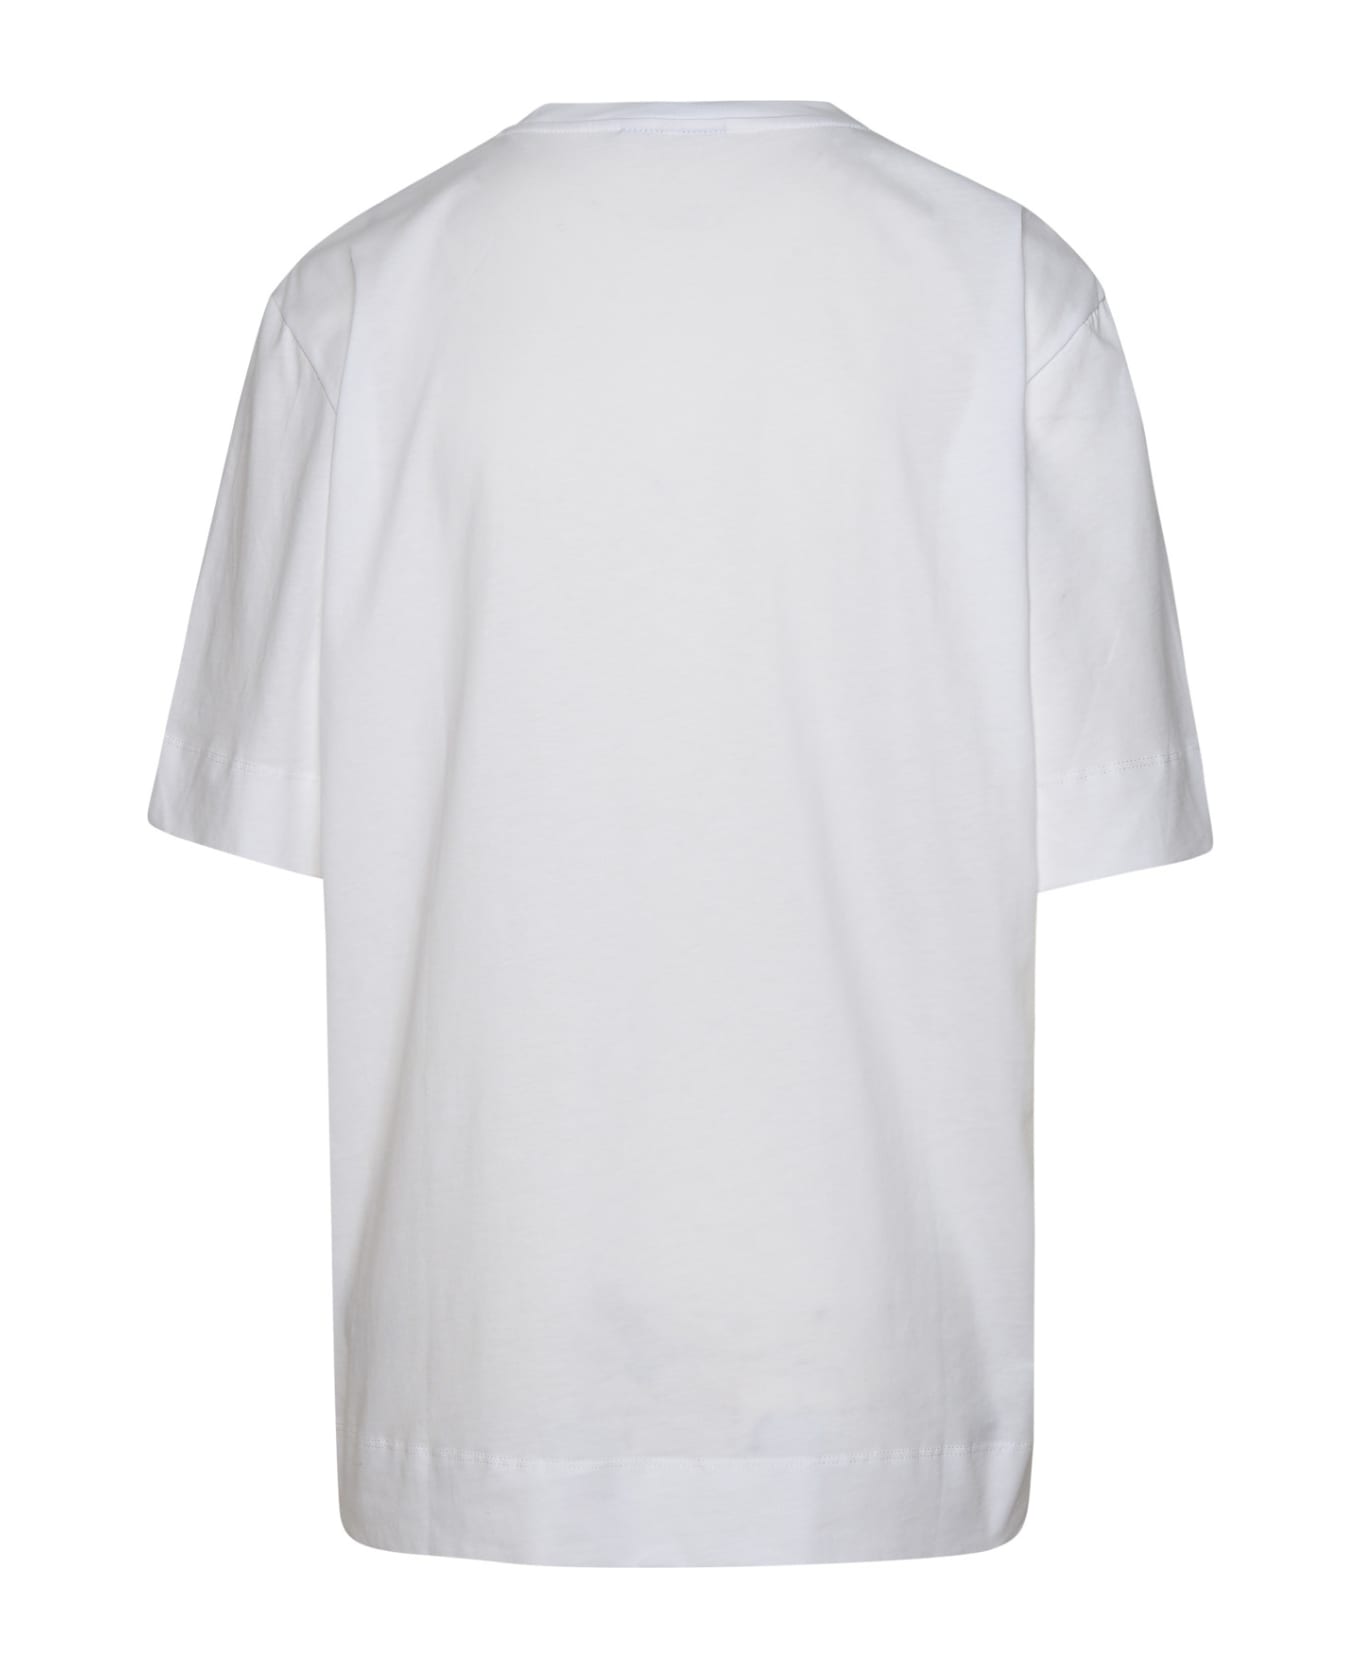 Ganni White Organic Cotton T-shirt - White